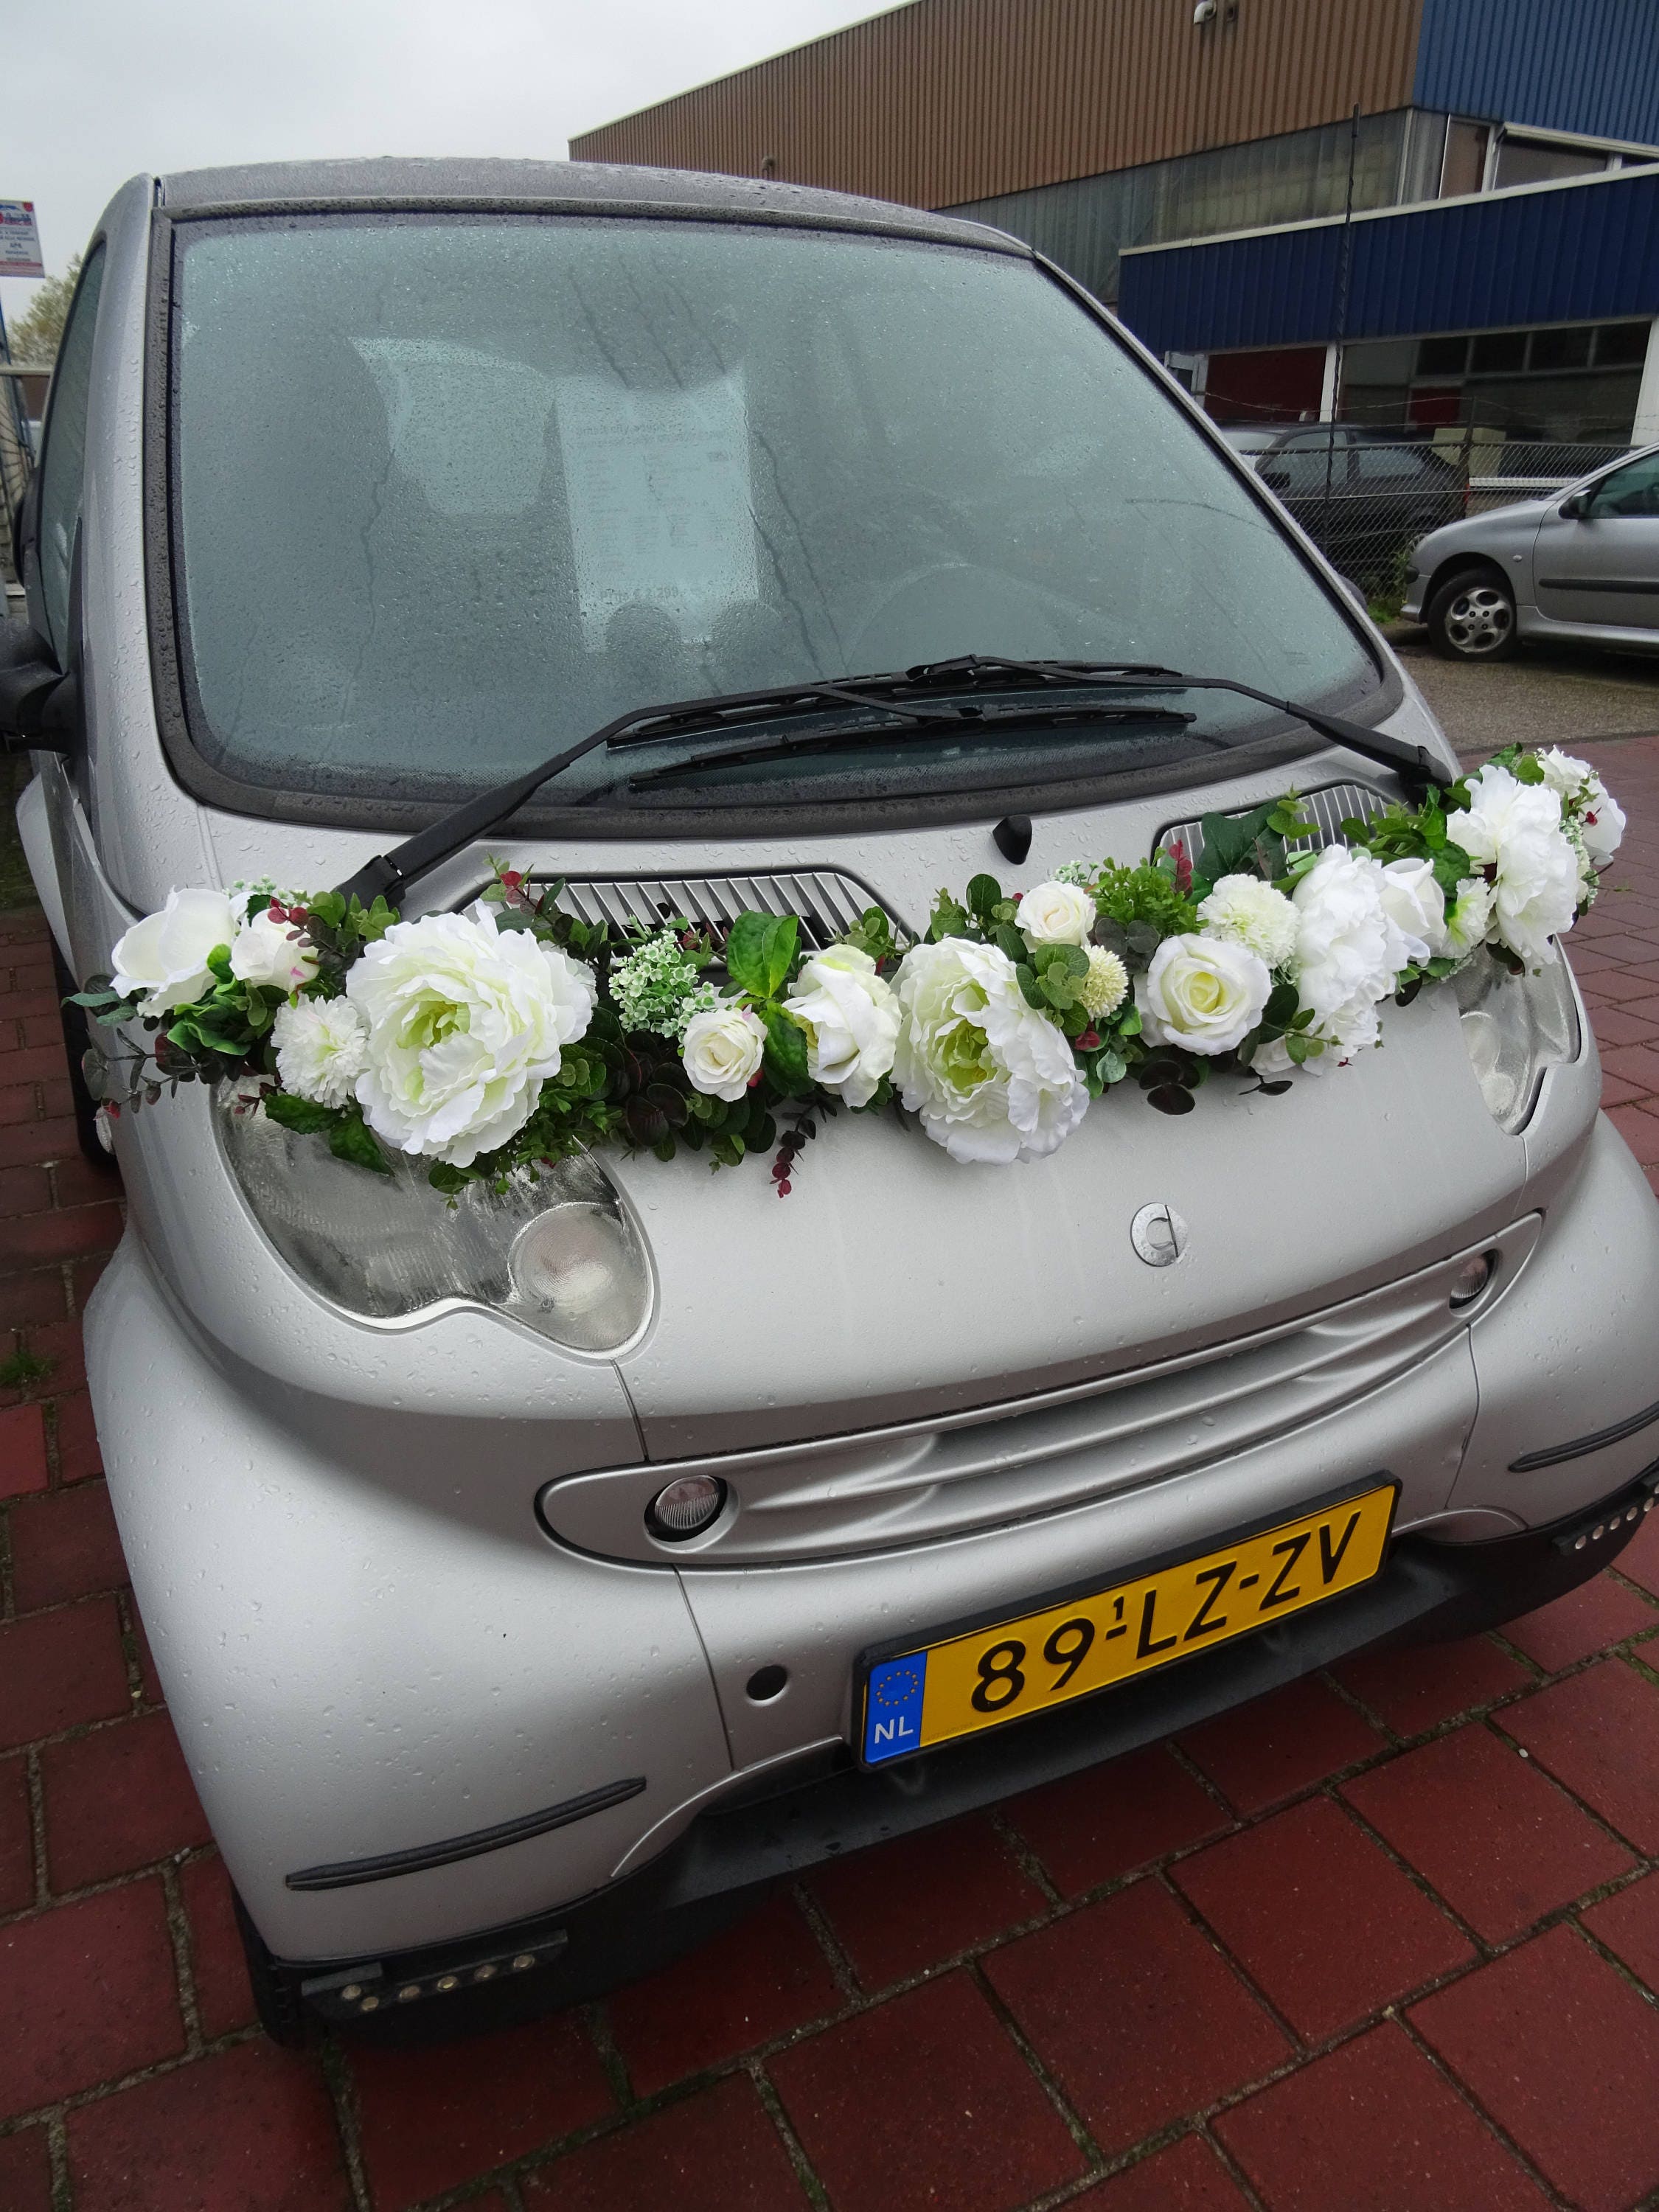 Bridal Flowers - Floral Magic  Wedding car deco, Wedding car